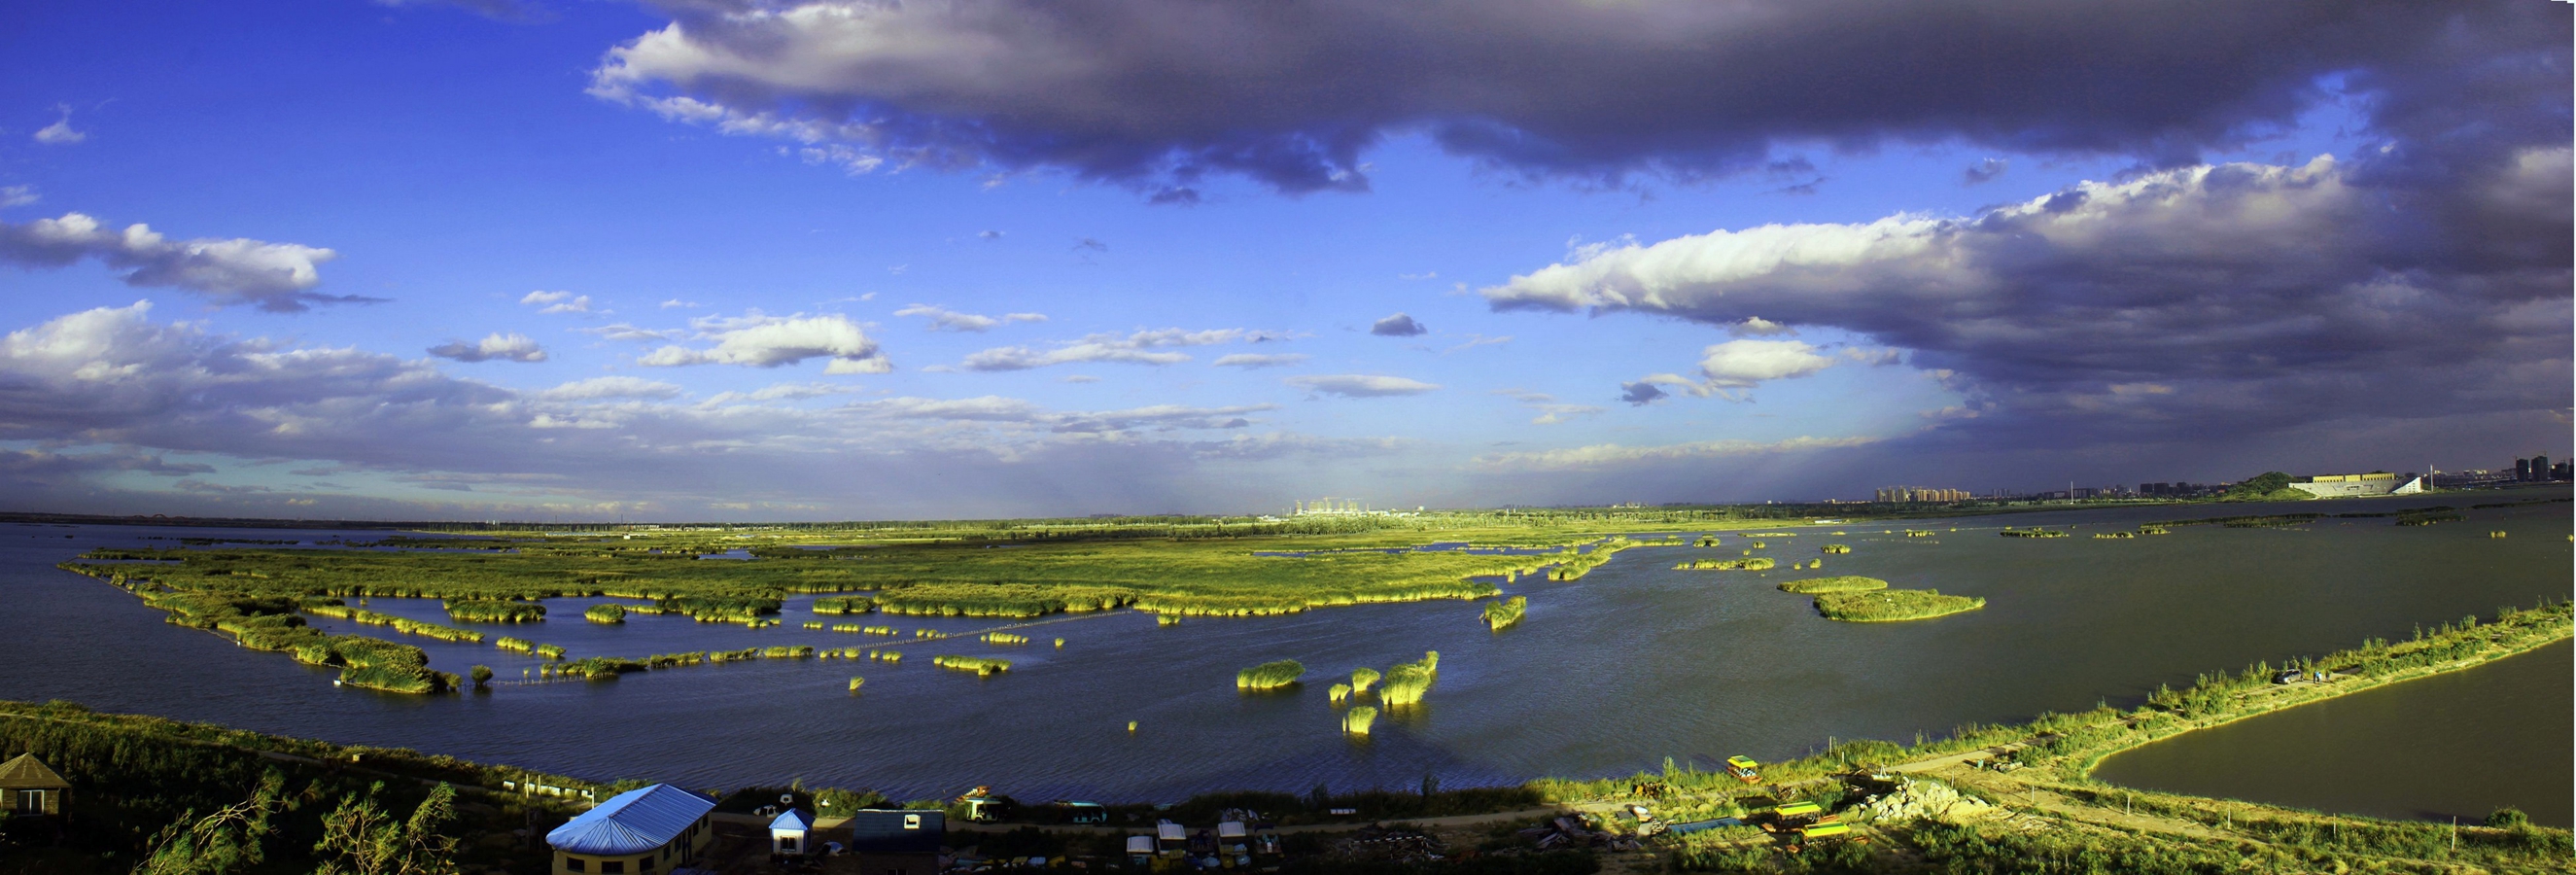 “塞上湖城，魅力银川”—银川湿地 .jpg